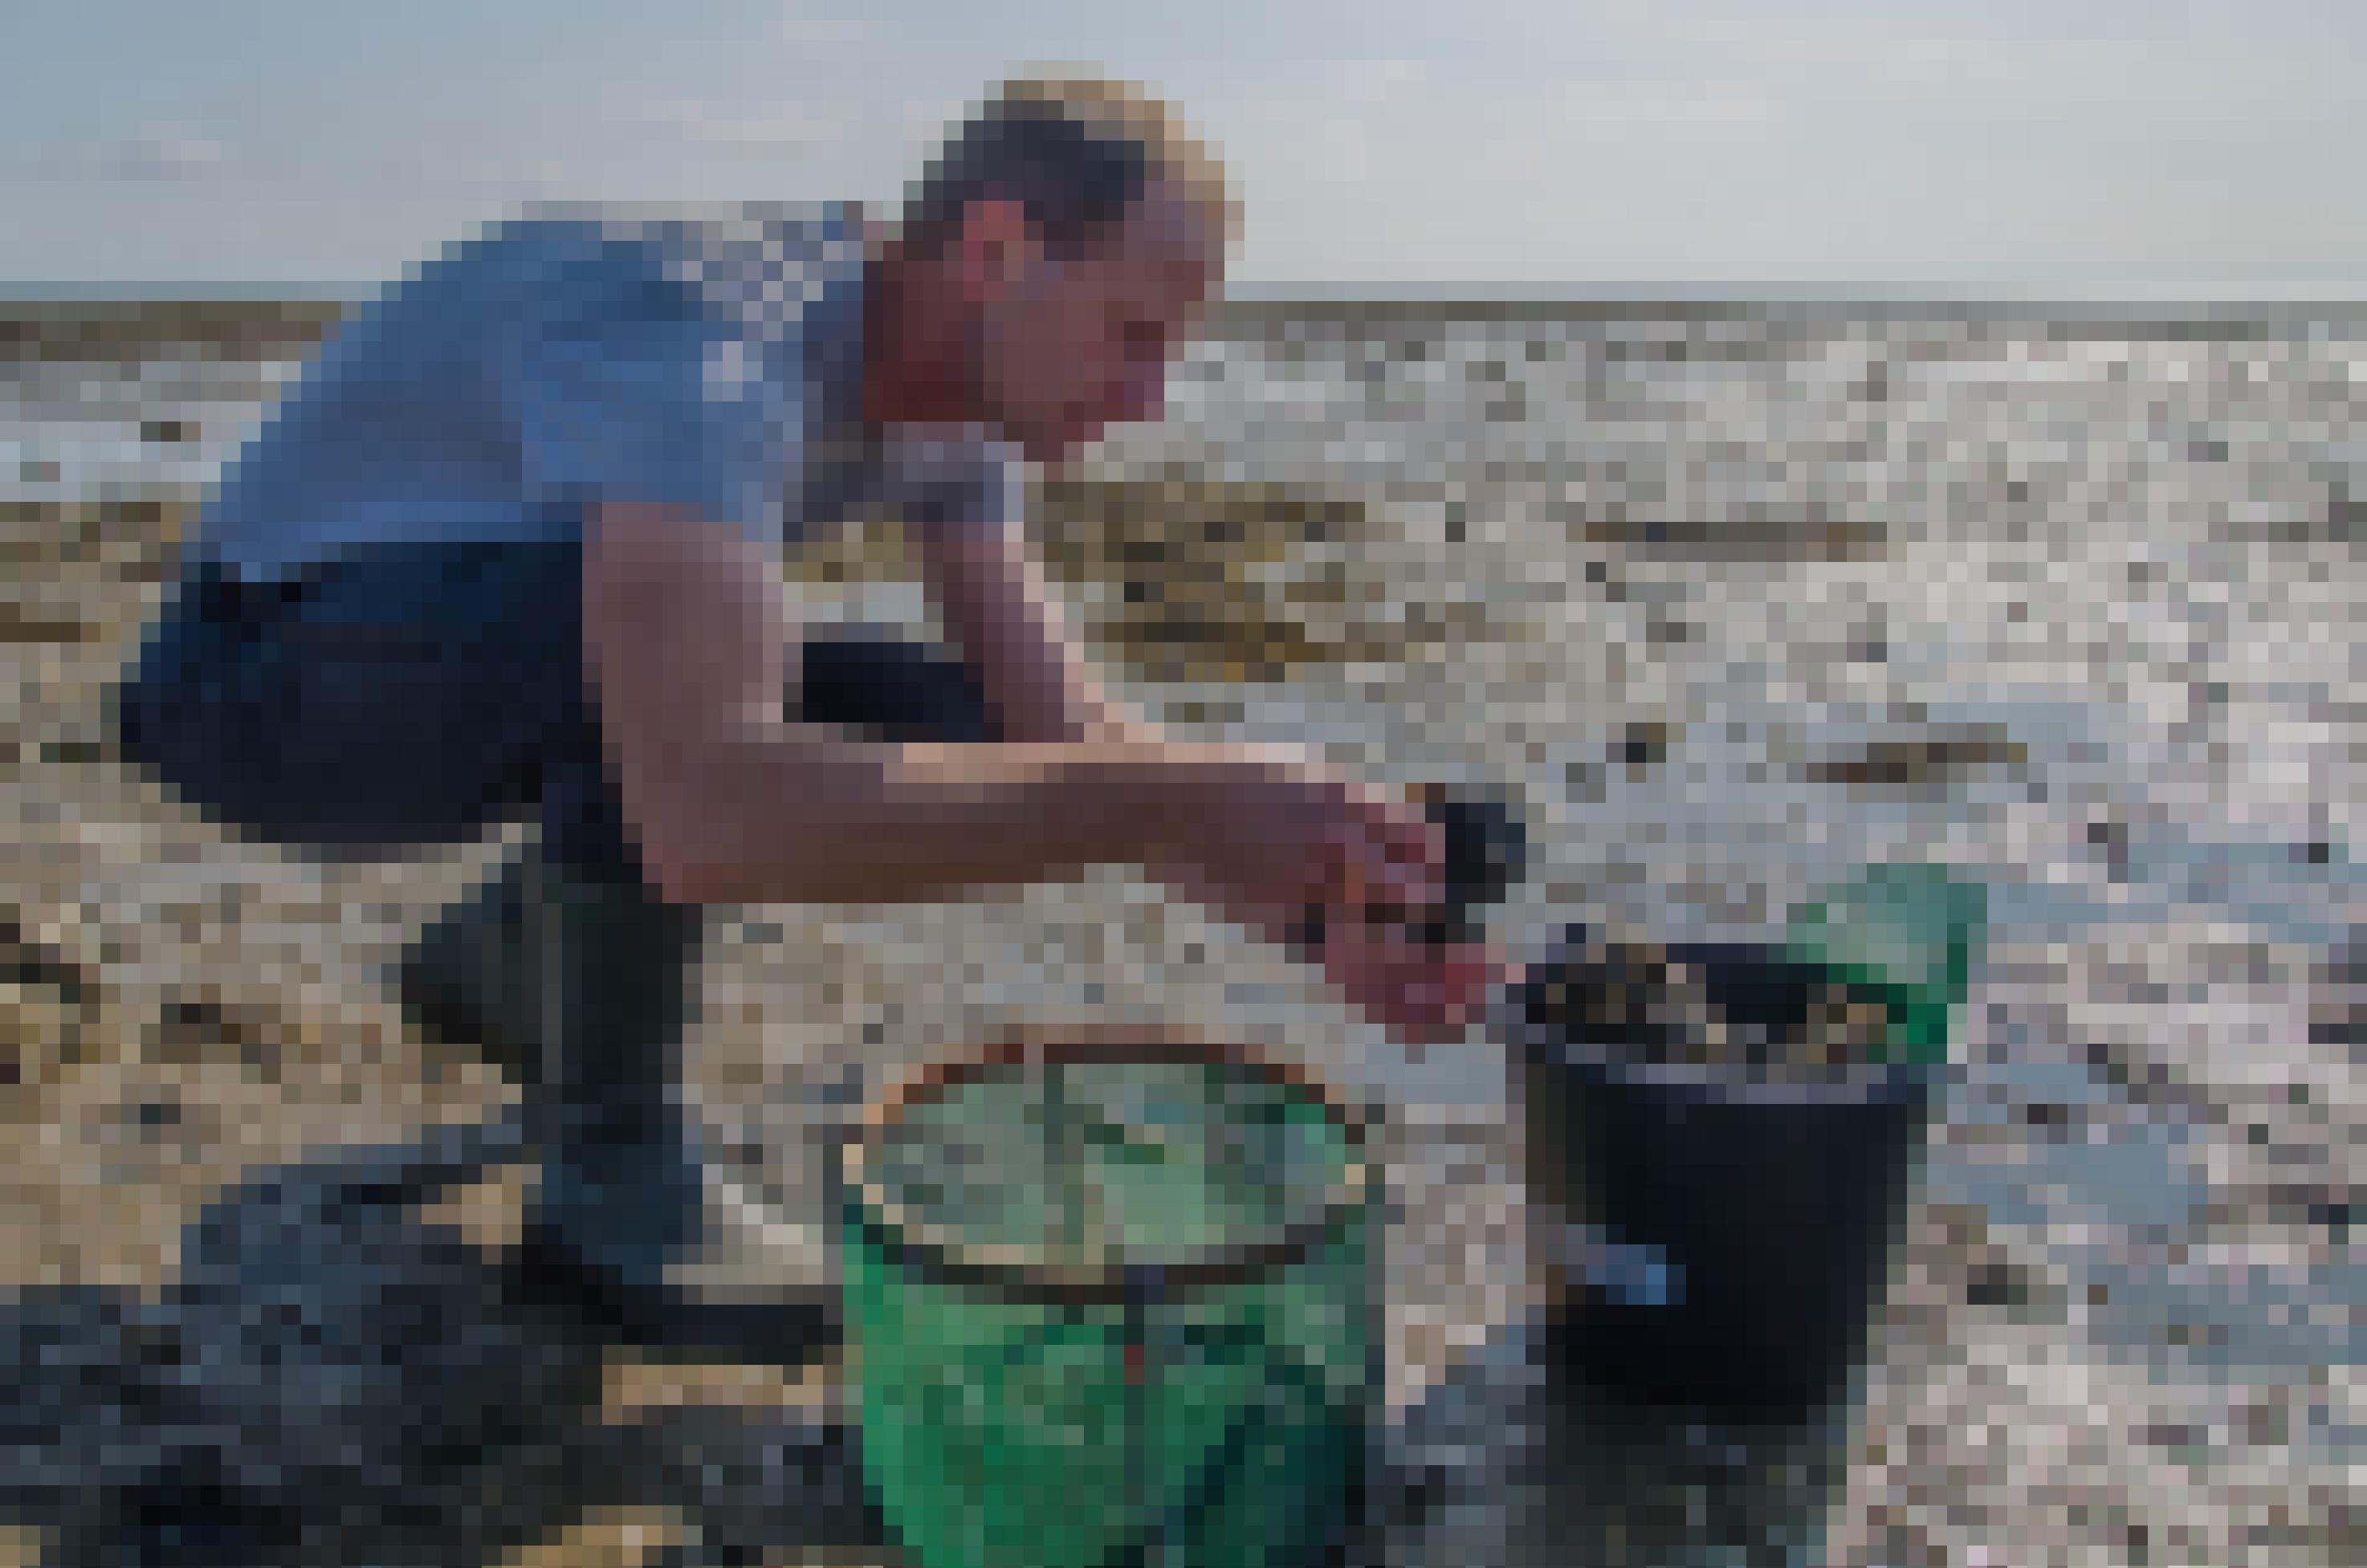 Ein Mann kniet mit Gummistiefeln im Wattenmeer und betrachtet Muscheln, die er in einem Eimer gesammelt hat.